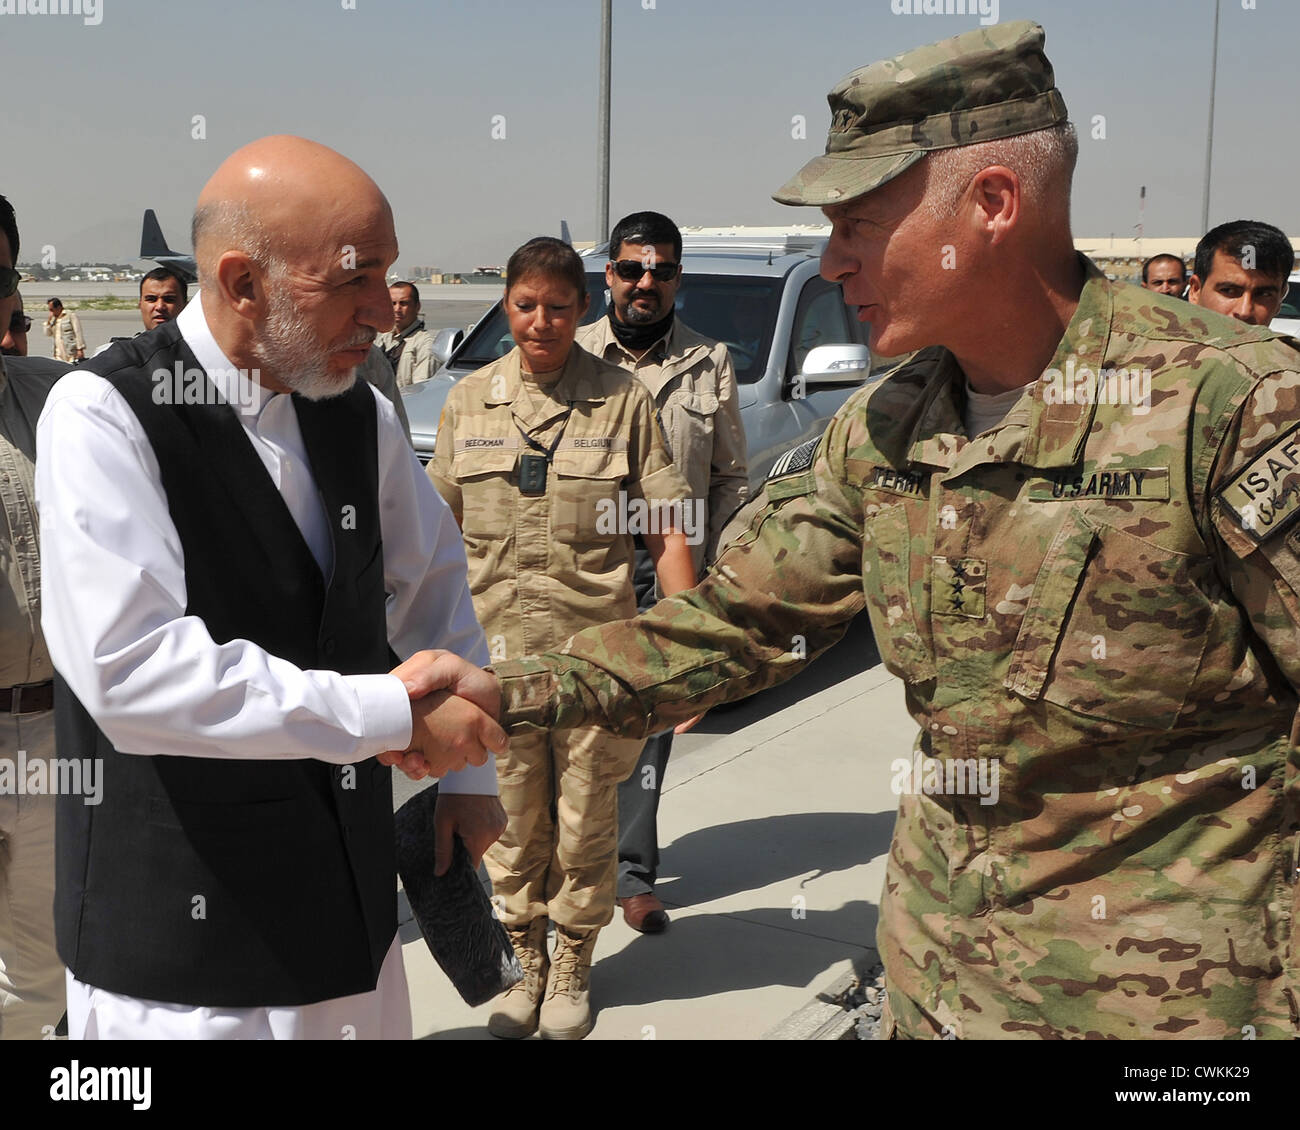 El Teniente General del Ejército estadounidense James Terry saluda al Presidente afgano Hamid Karzai en la línea de vuelo en el aeropuerto internacional de Kabul el 21 de agosto de 2012. Foto de stock